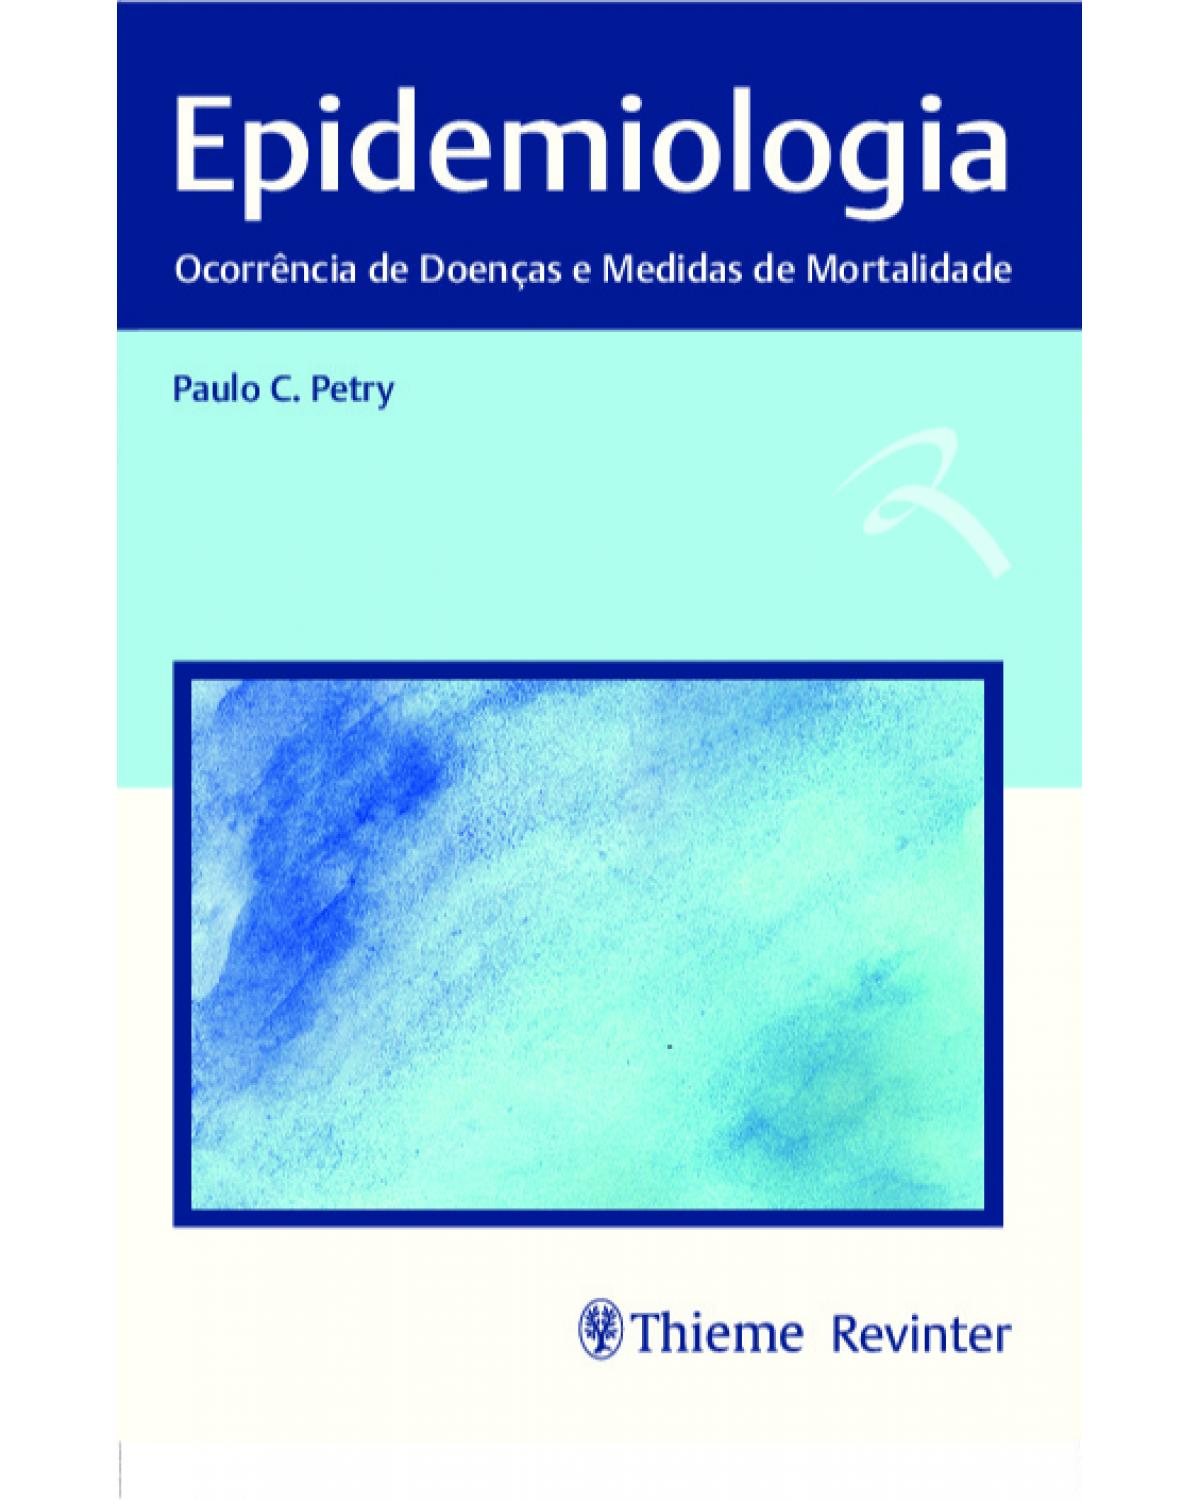 Epidemiologia - Ocorrência de doenças e medidas de mortalidade - 1ª Edição | 2019